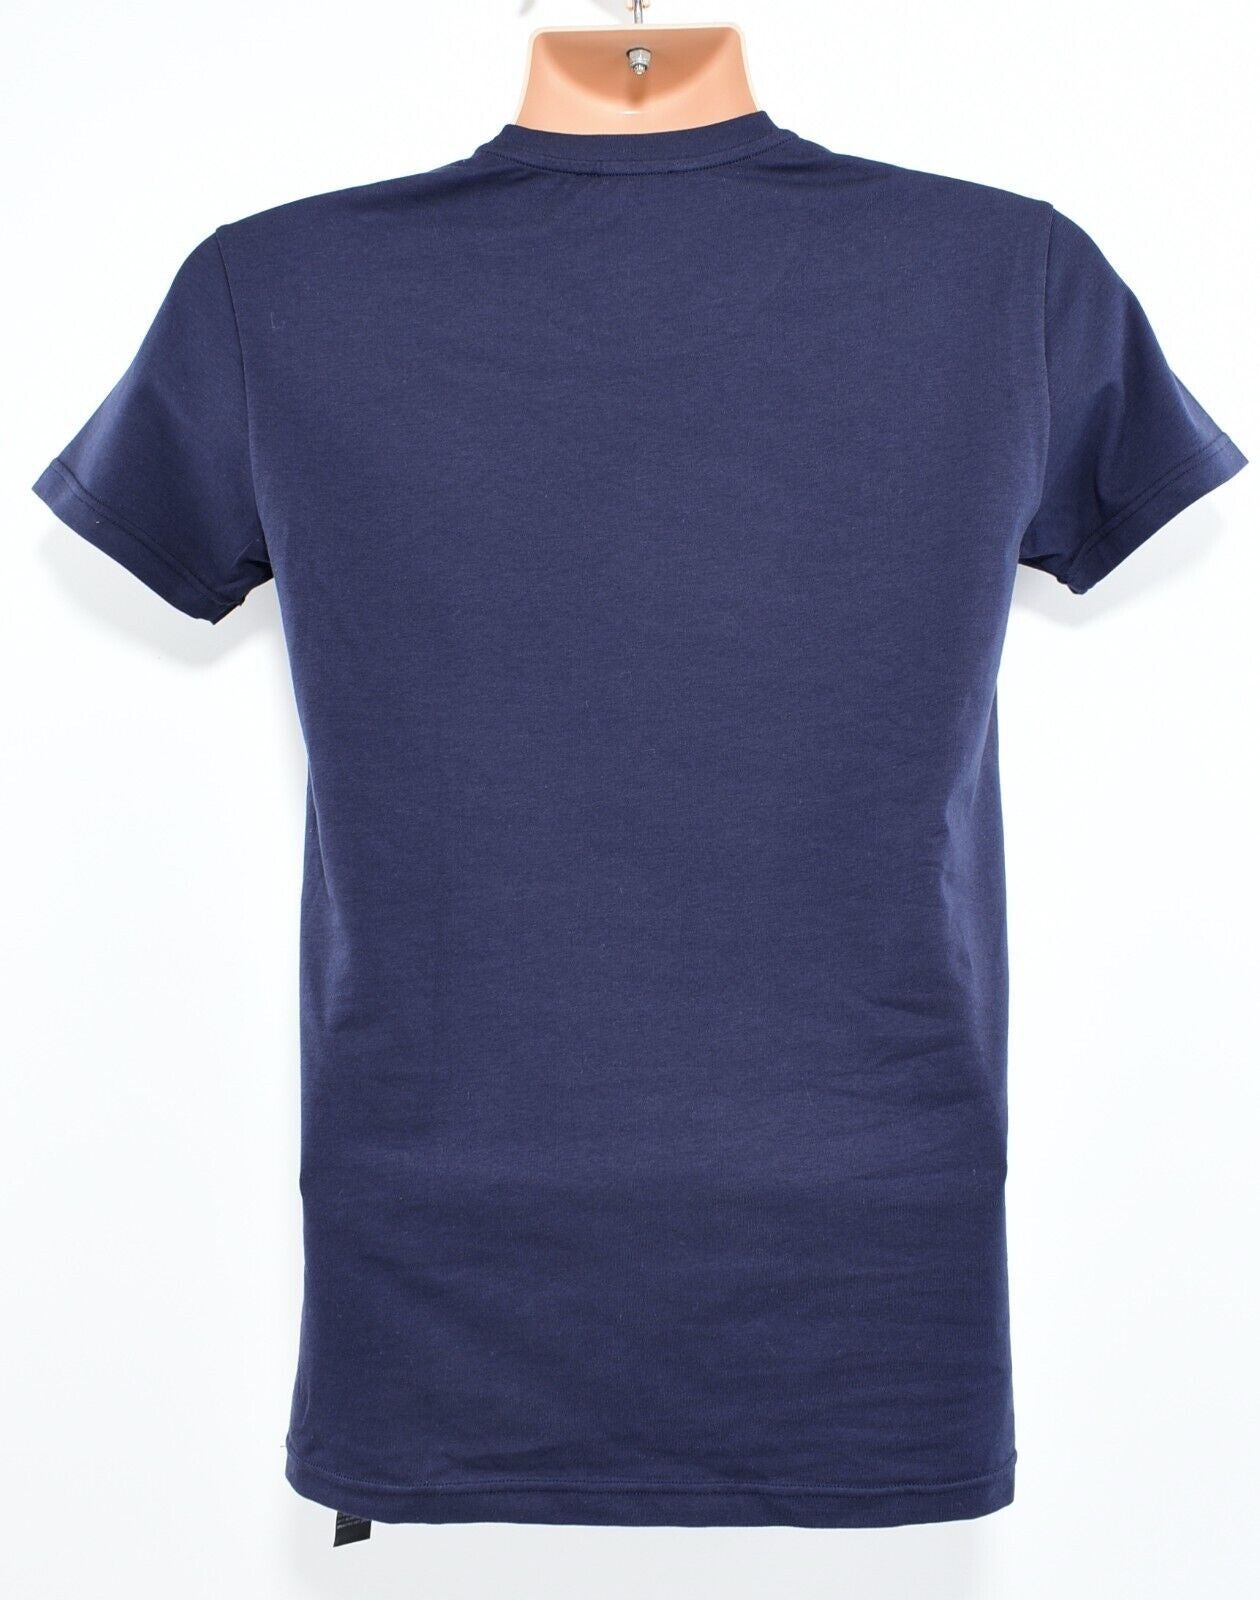 EMPORIO ARMANI Underwear: Mens Crew Neck Cotton T-shirt, Navy Blue, size M